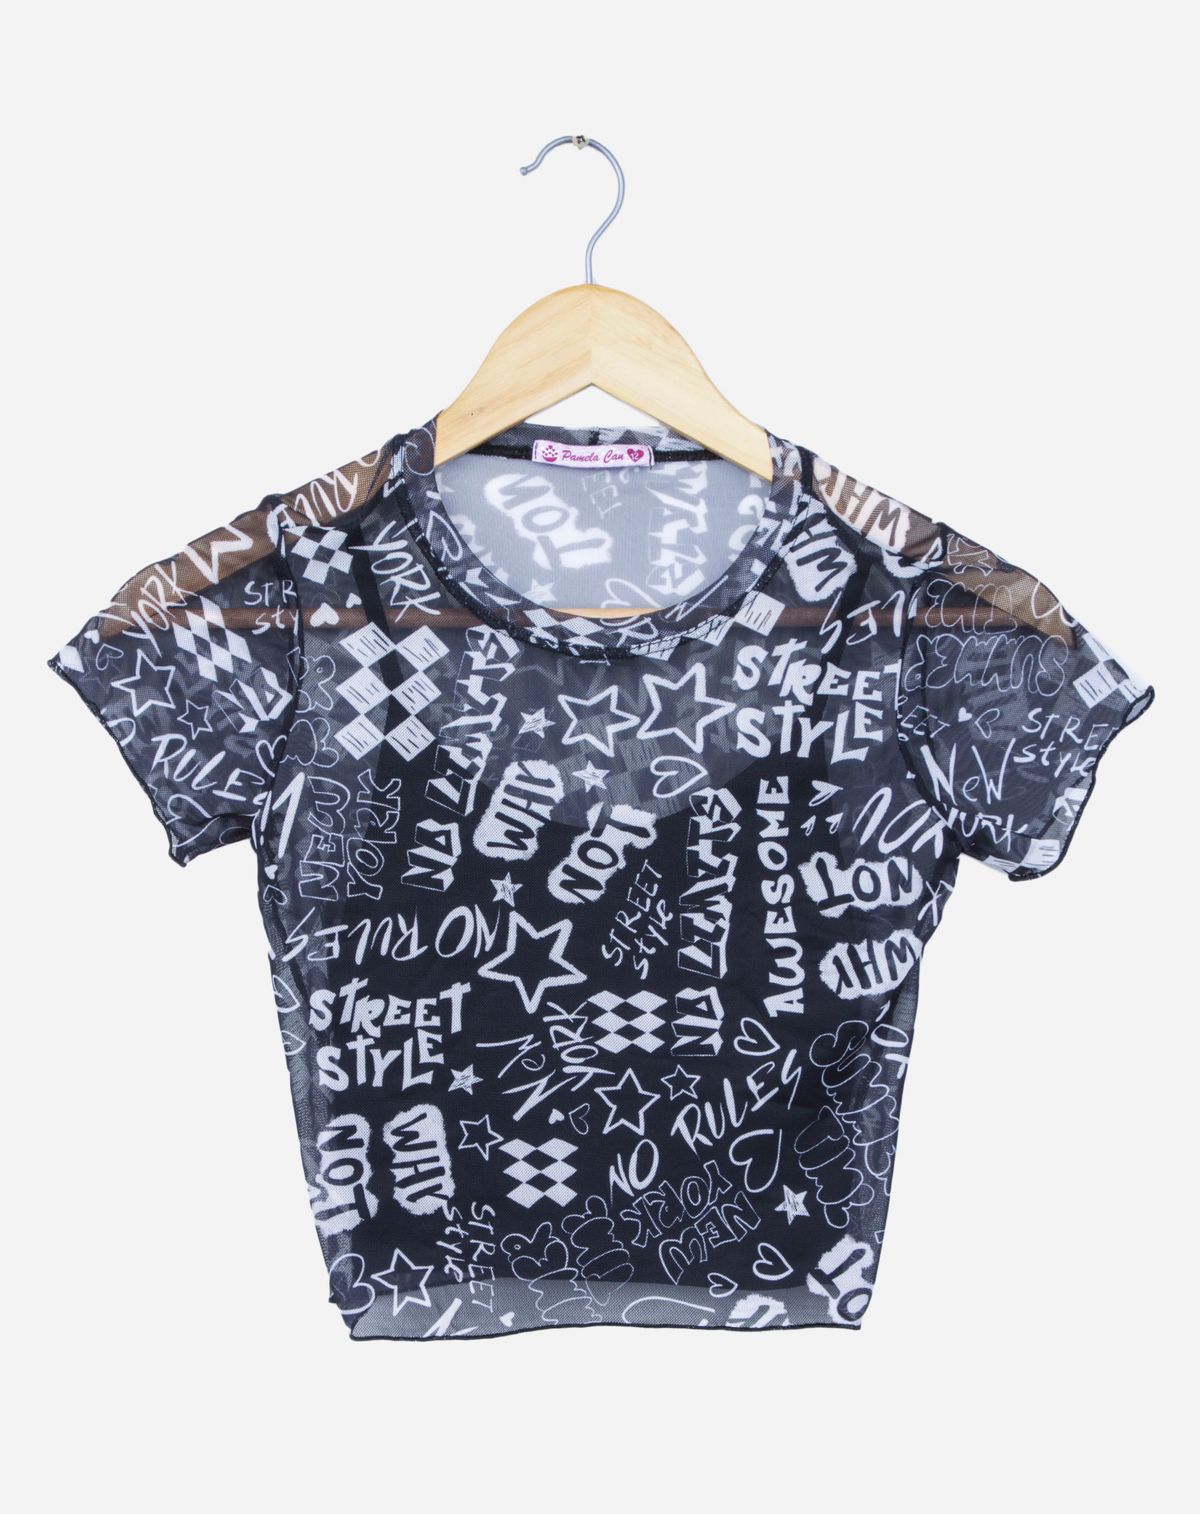 685283004-camiseta-manga-curta-juvenil-menina-estampada-preto-12-1ac